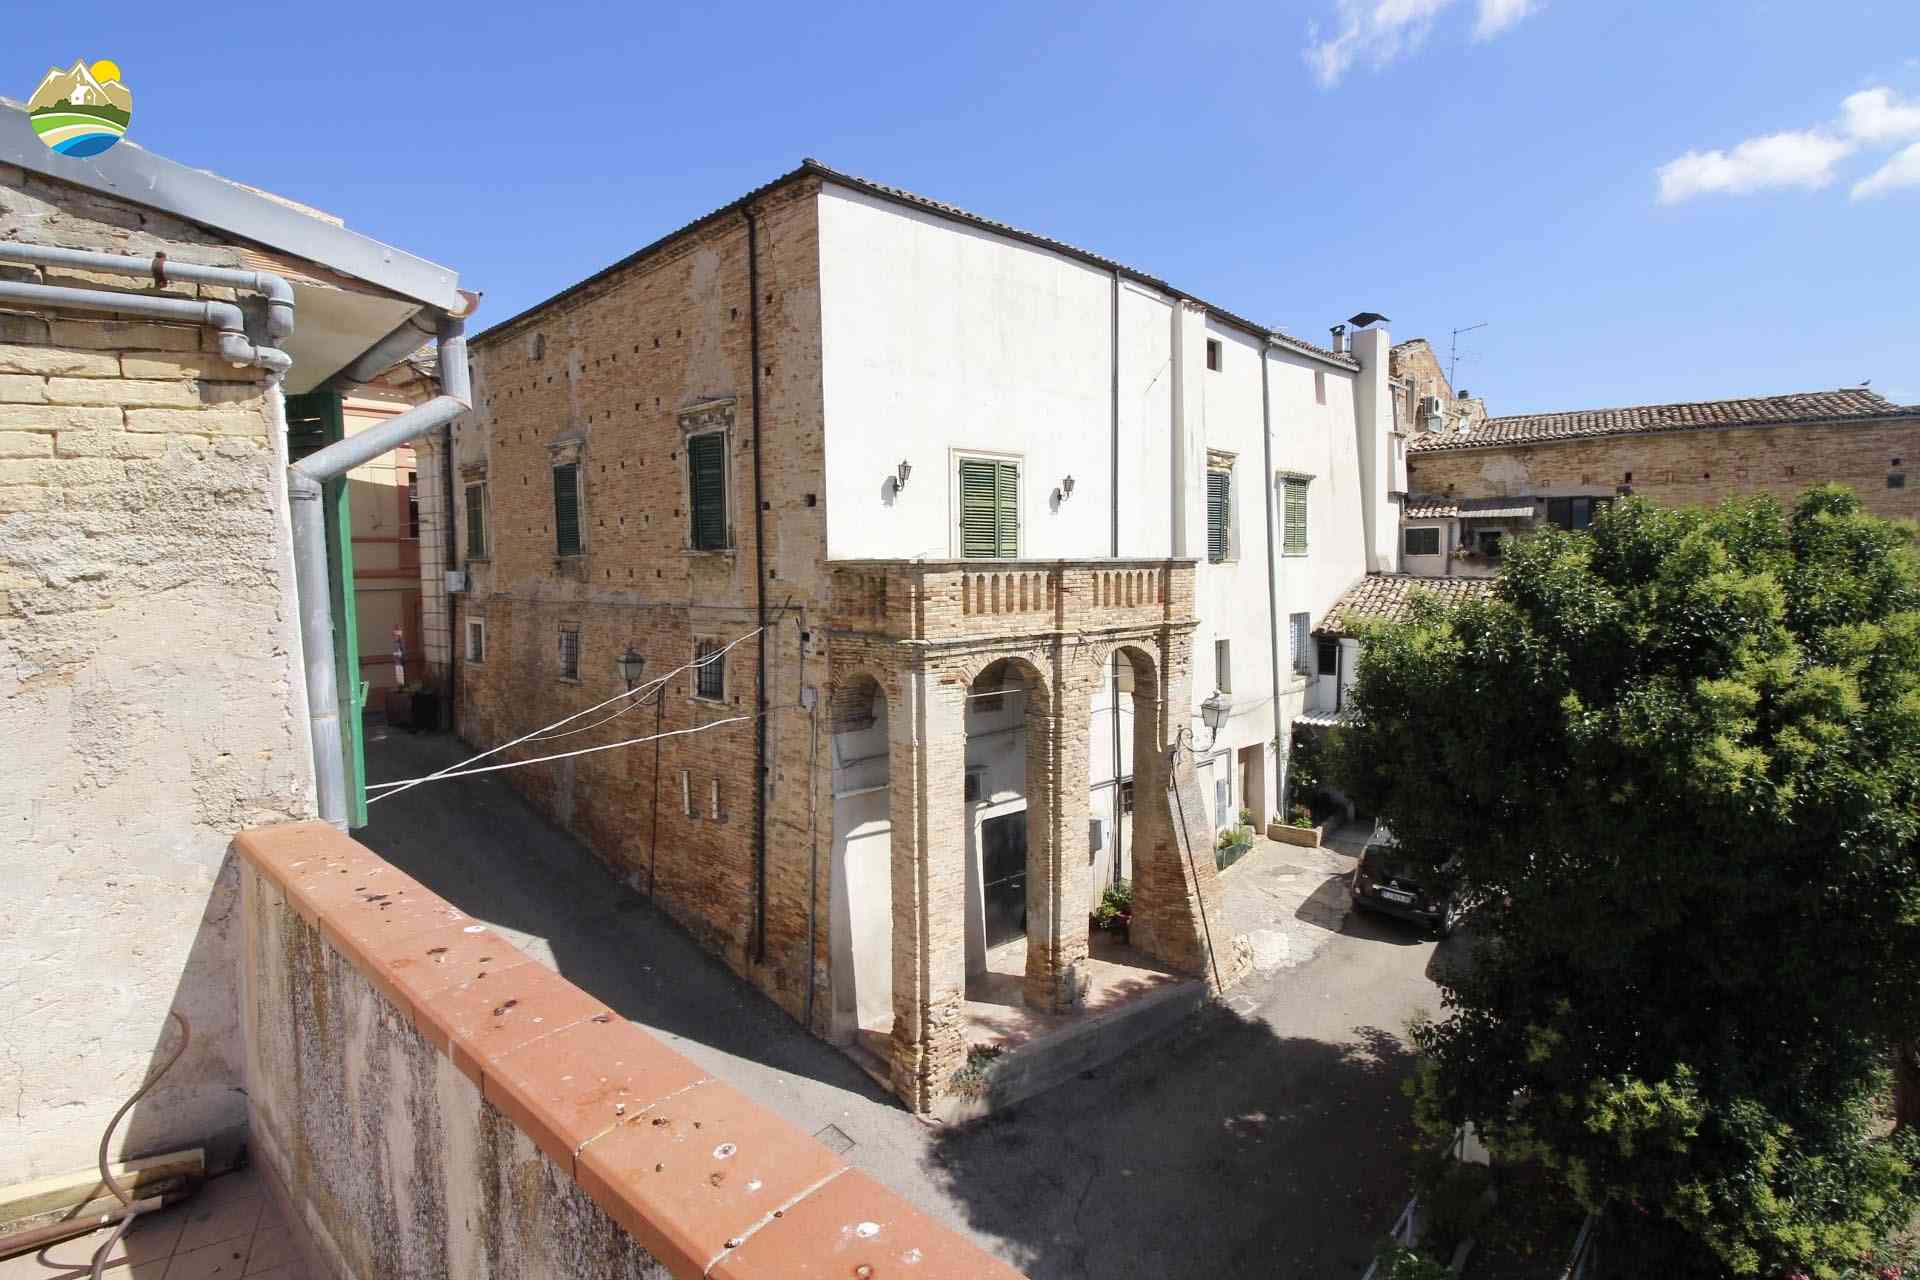 Casa in paese Casa in paese in vendita Pianella (PE), Casa della Torre - Pianella - EUR 37.139 800